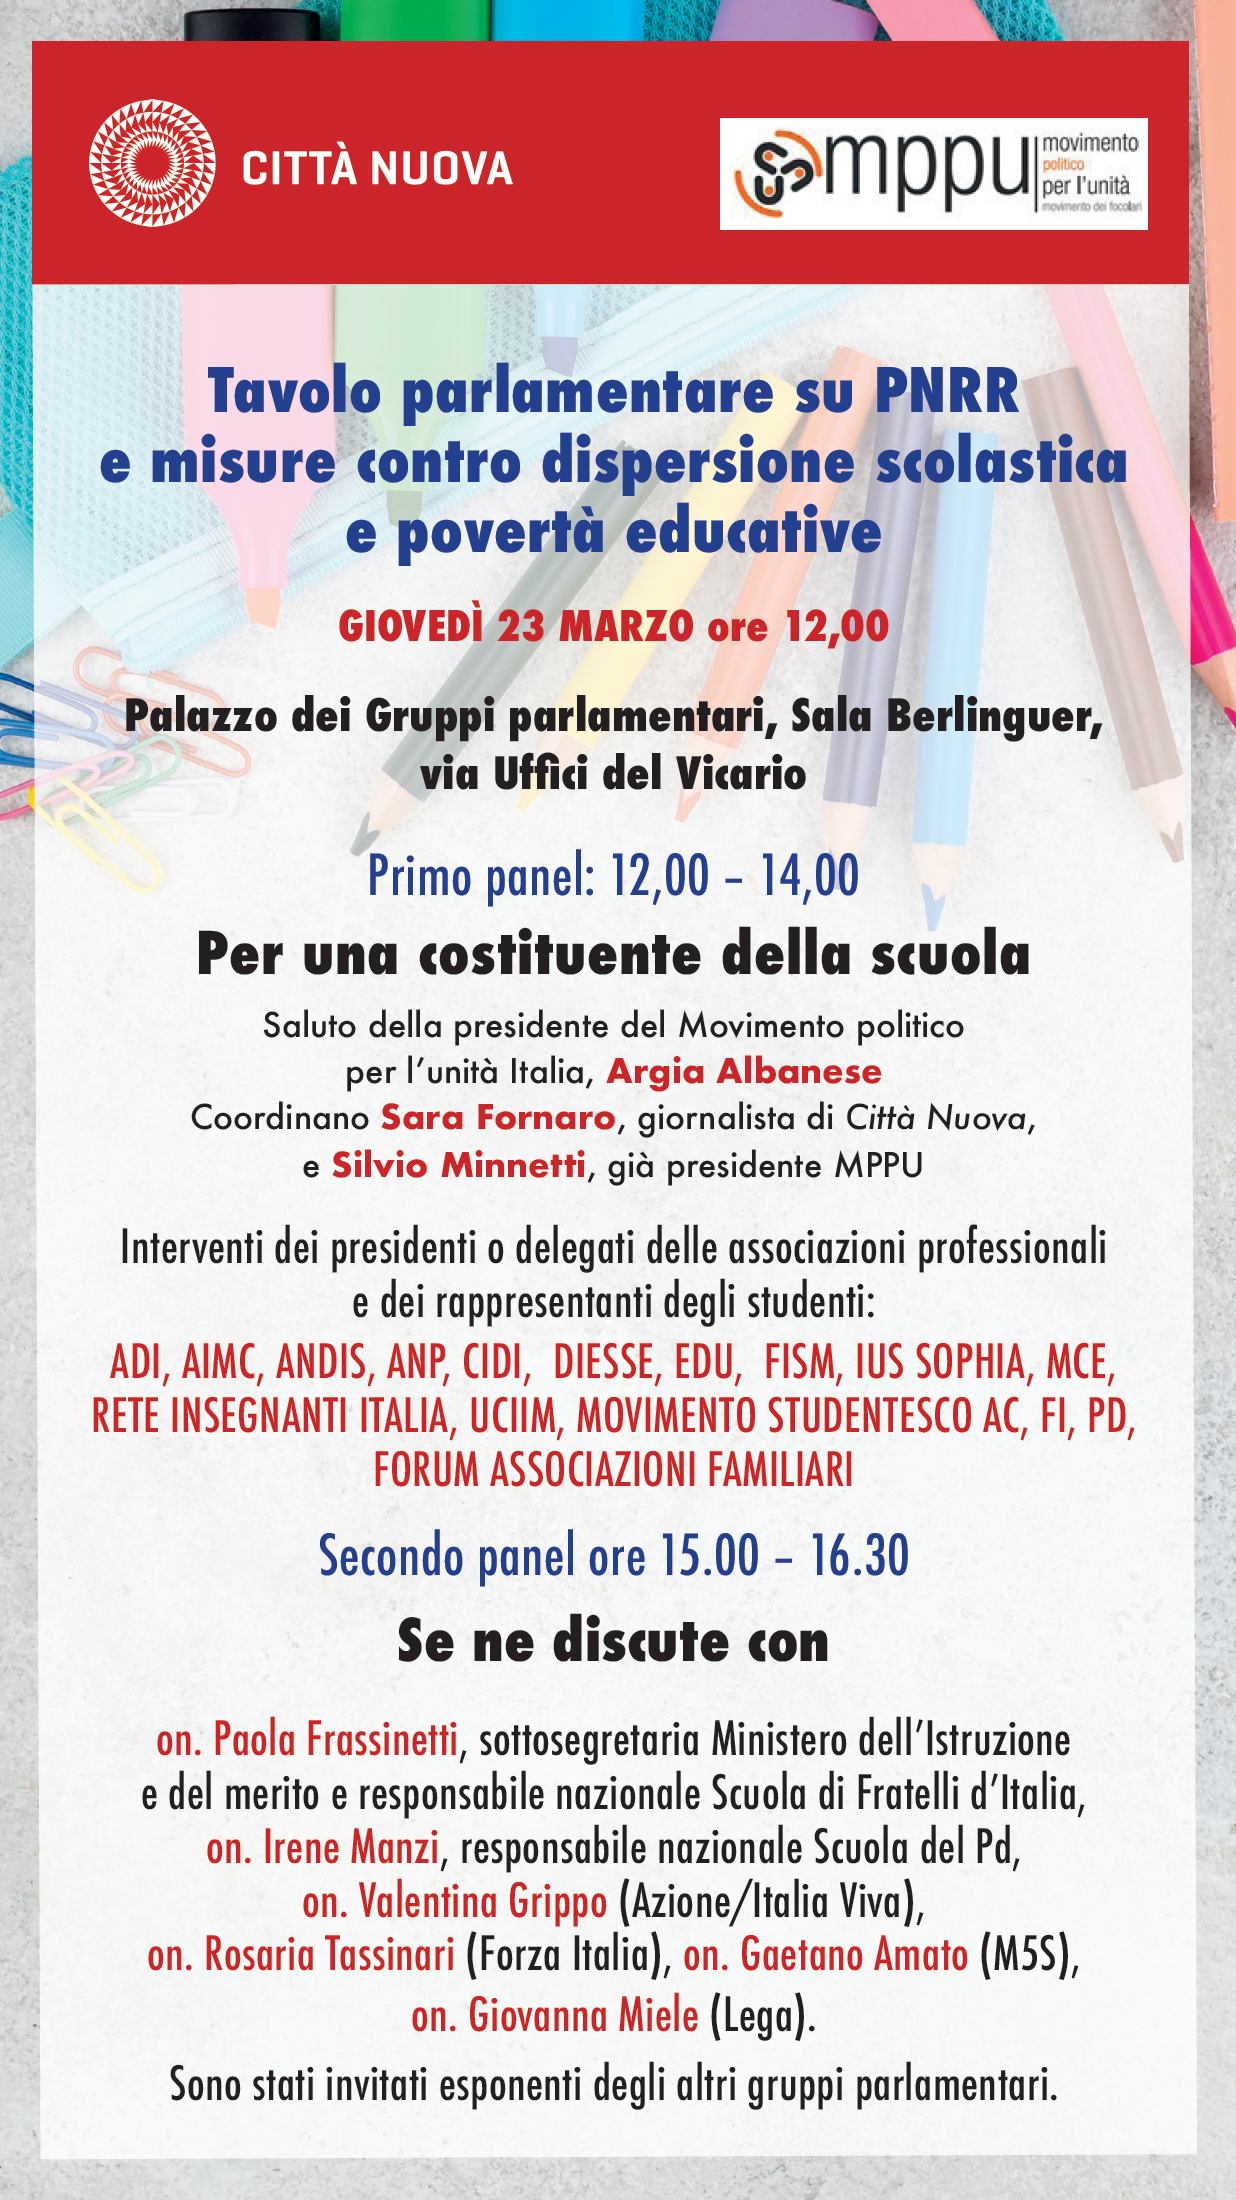 Tavolo parlamentare sulla scuola promosso da Città Nuova e Mppu Italia per discutere di povertà educative e dispersione scolastica